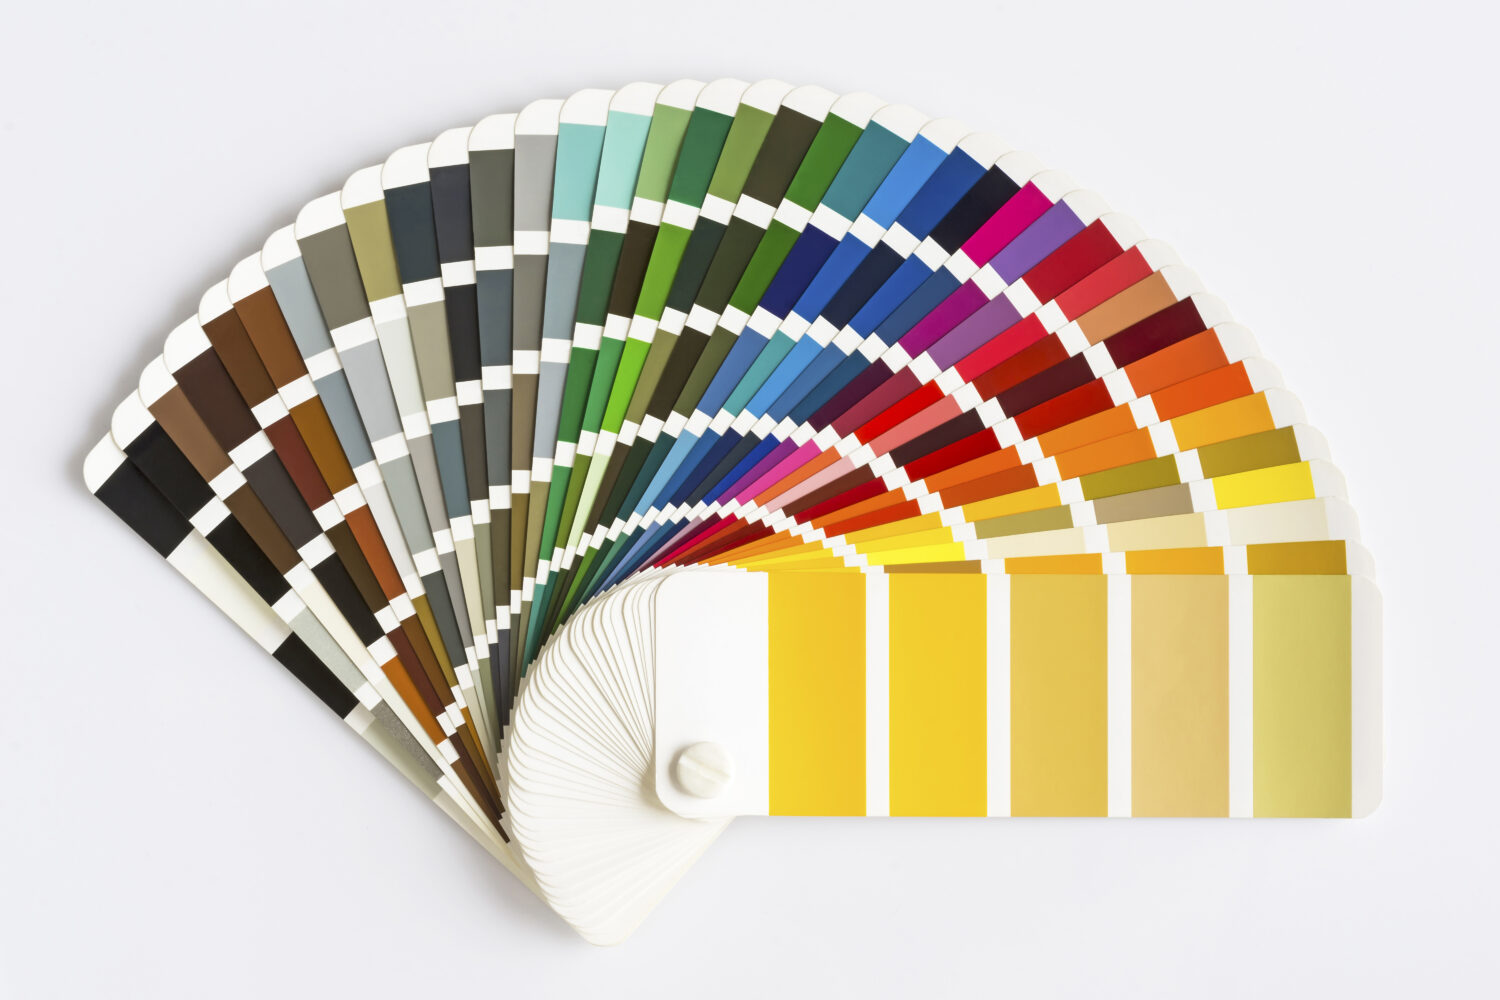 Guida alla tavolozza dei colori isolata su sfondo bianco.  Catalogo colori campione.